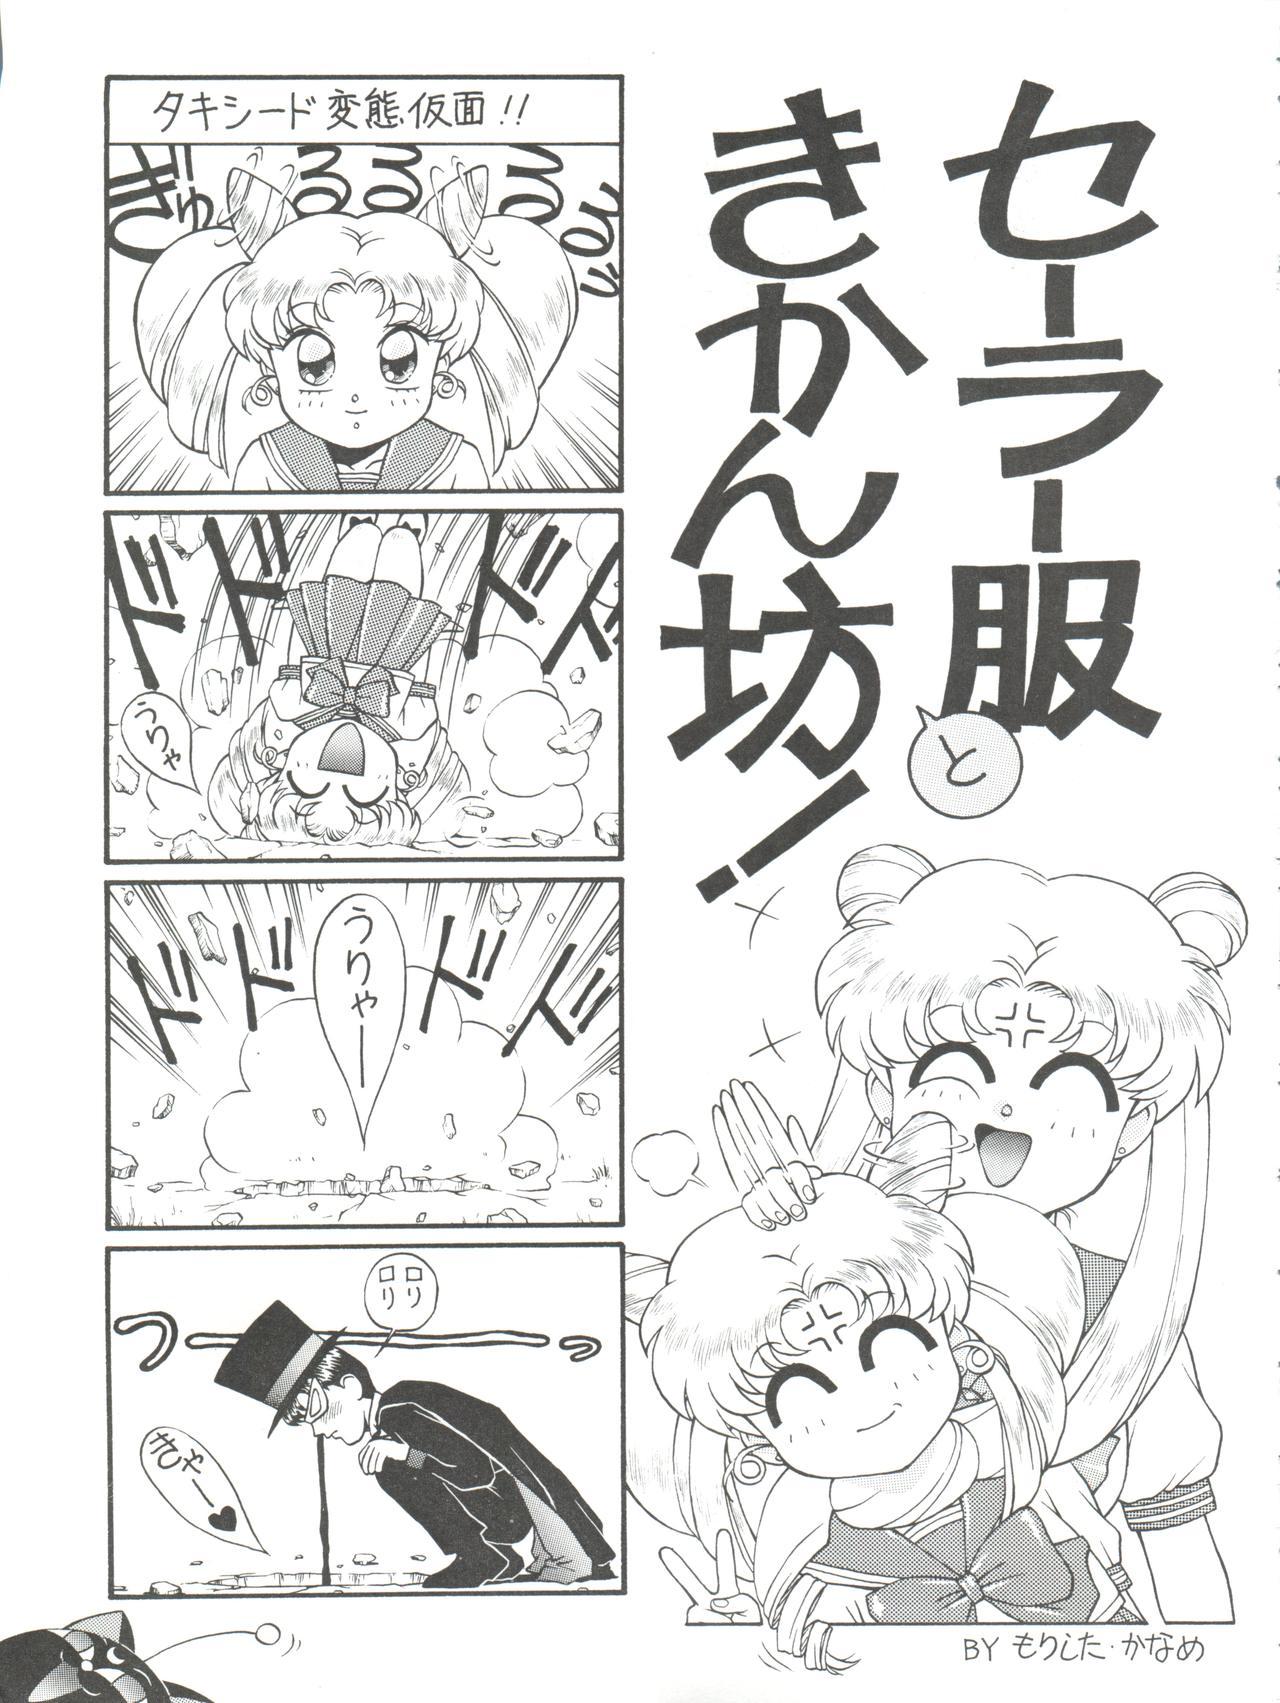 Hot Milf NANIWA-YA FINAL DRESS UP! - Sailor moon Slayers Hime-chans ribbon Ng knight lamune and 40 Brave express might gaine Penetration - Page 11